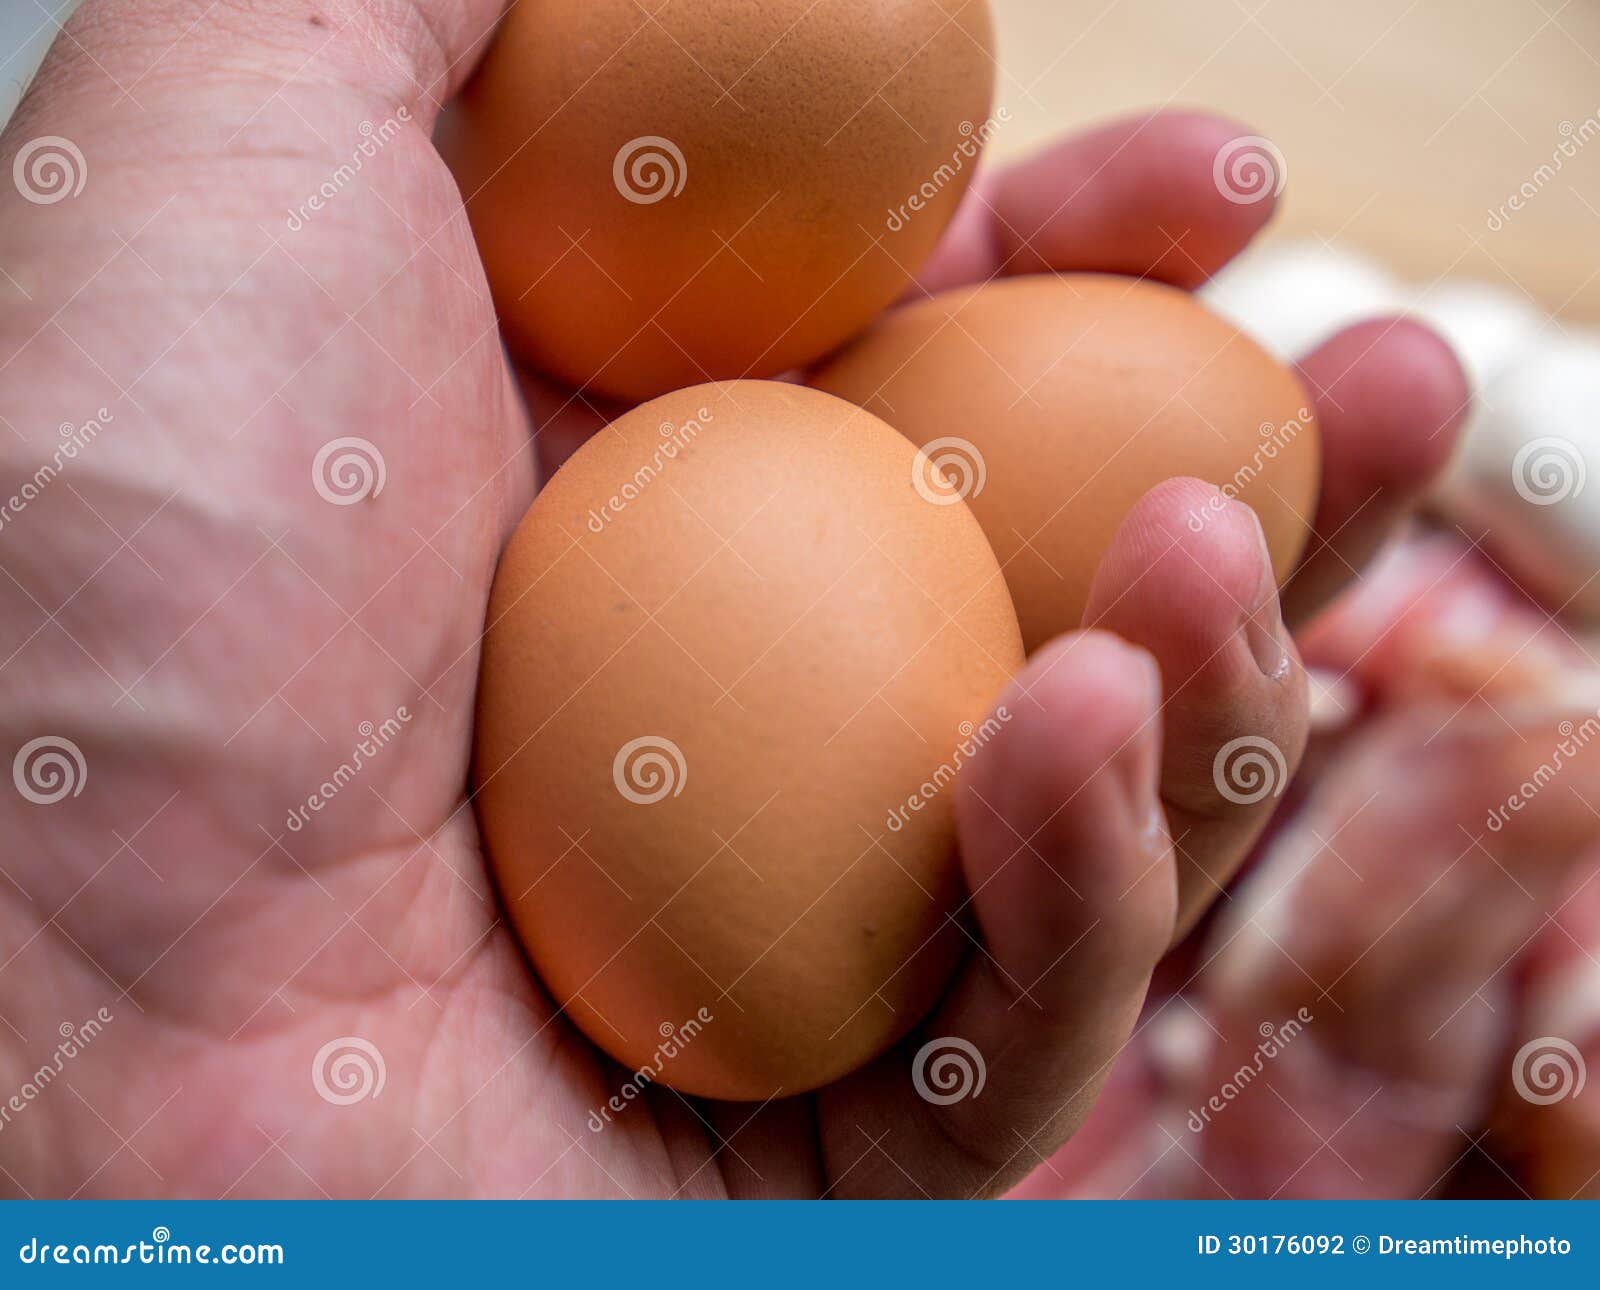 Включи 3 яйца. Три яйца. Три яичка в ладони. Три яйца фото. Три яйца на фоне.